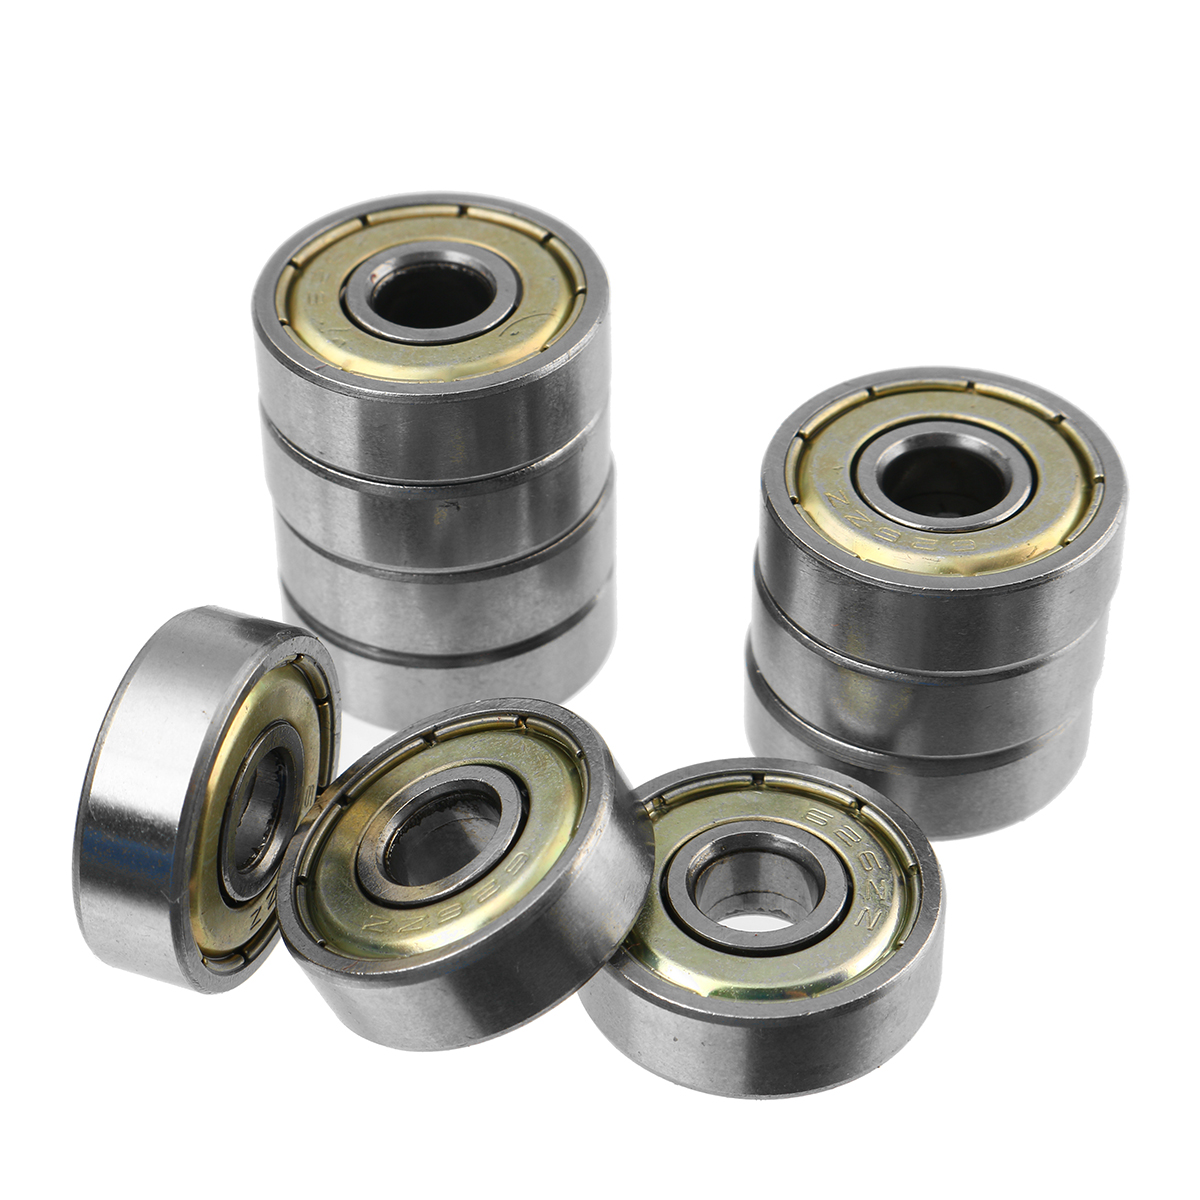 10Pcs-High-Carbon-Steel-Ball-Bearing-Skate-Wheels-For-Skateboard-Bearings-1657359-2